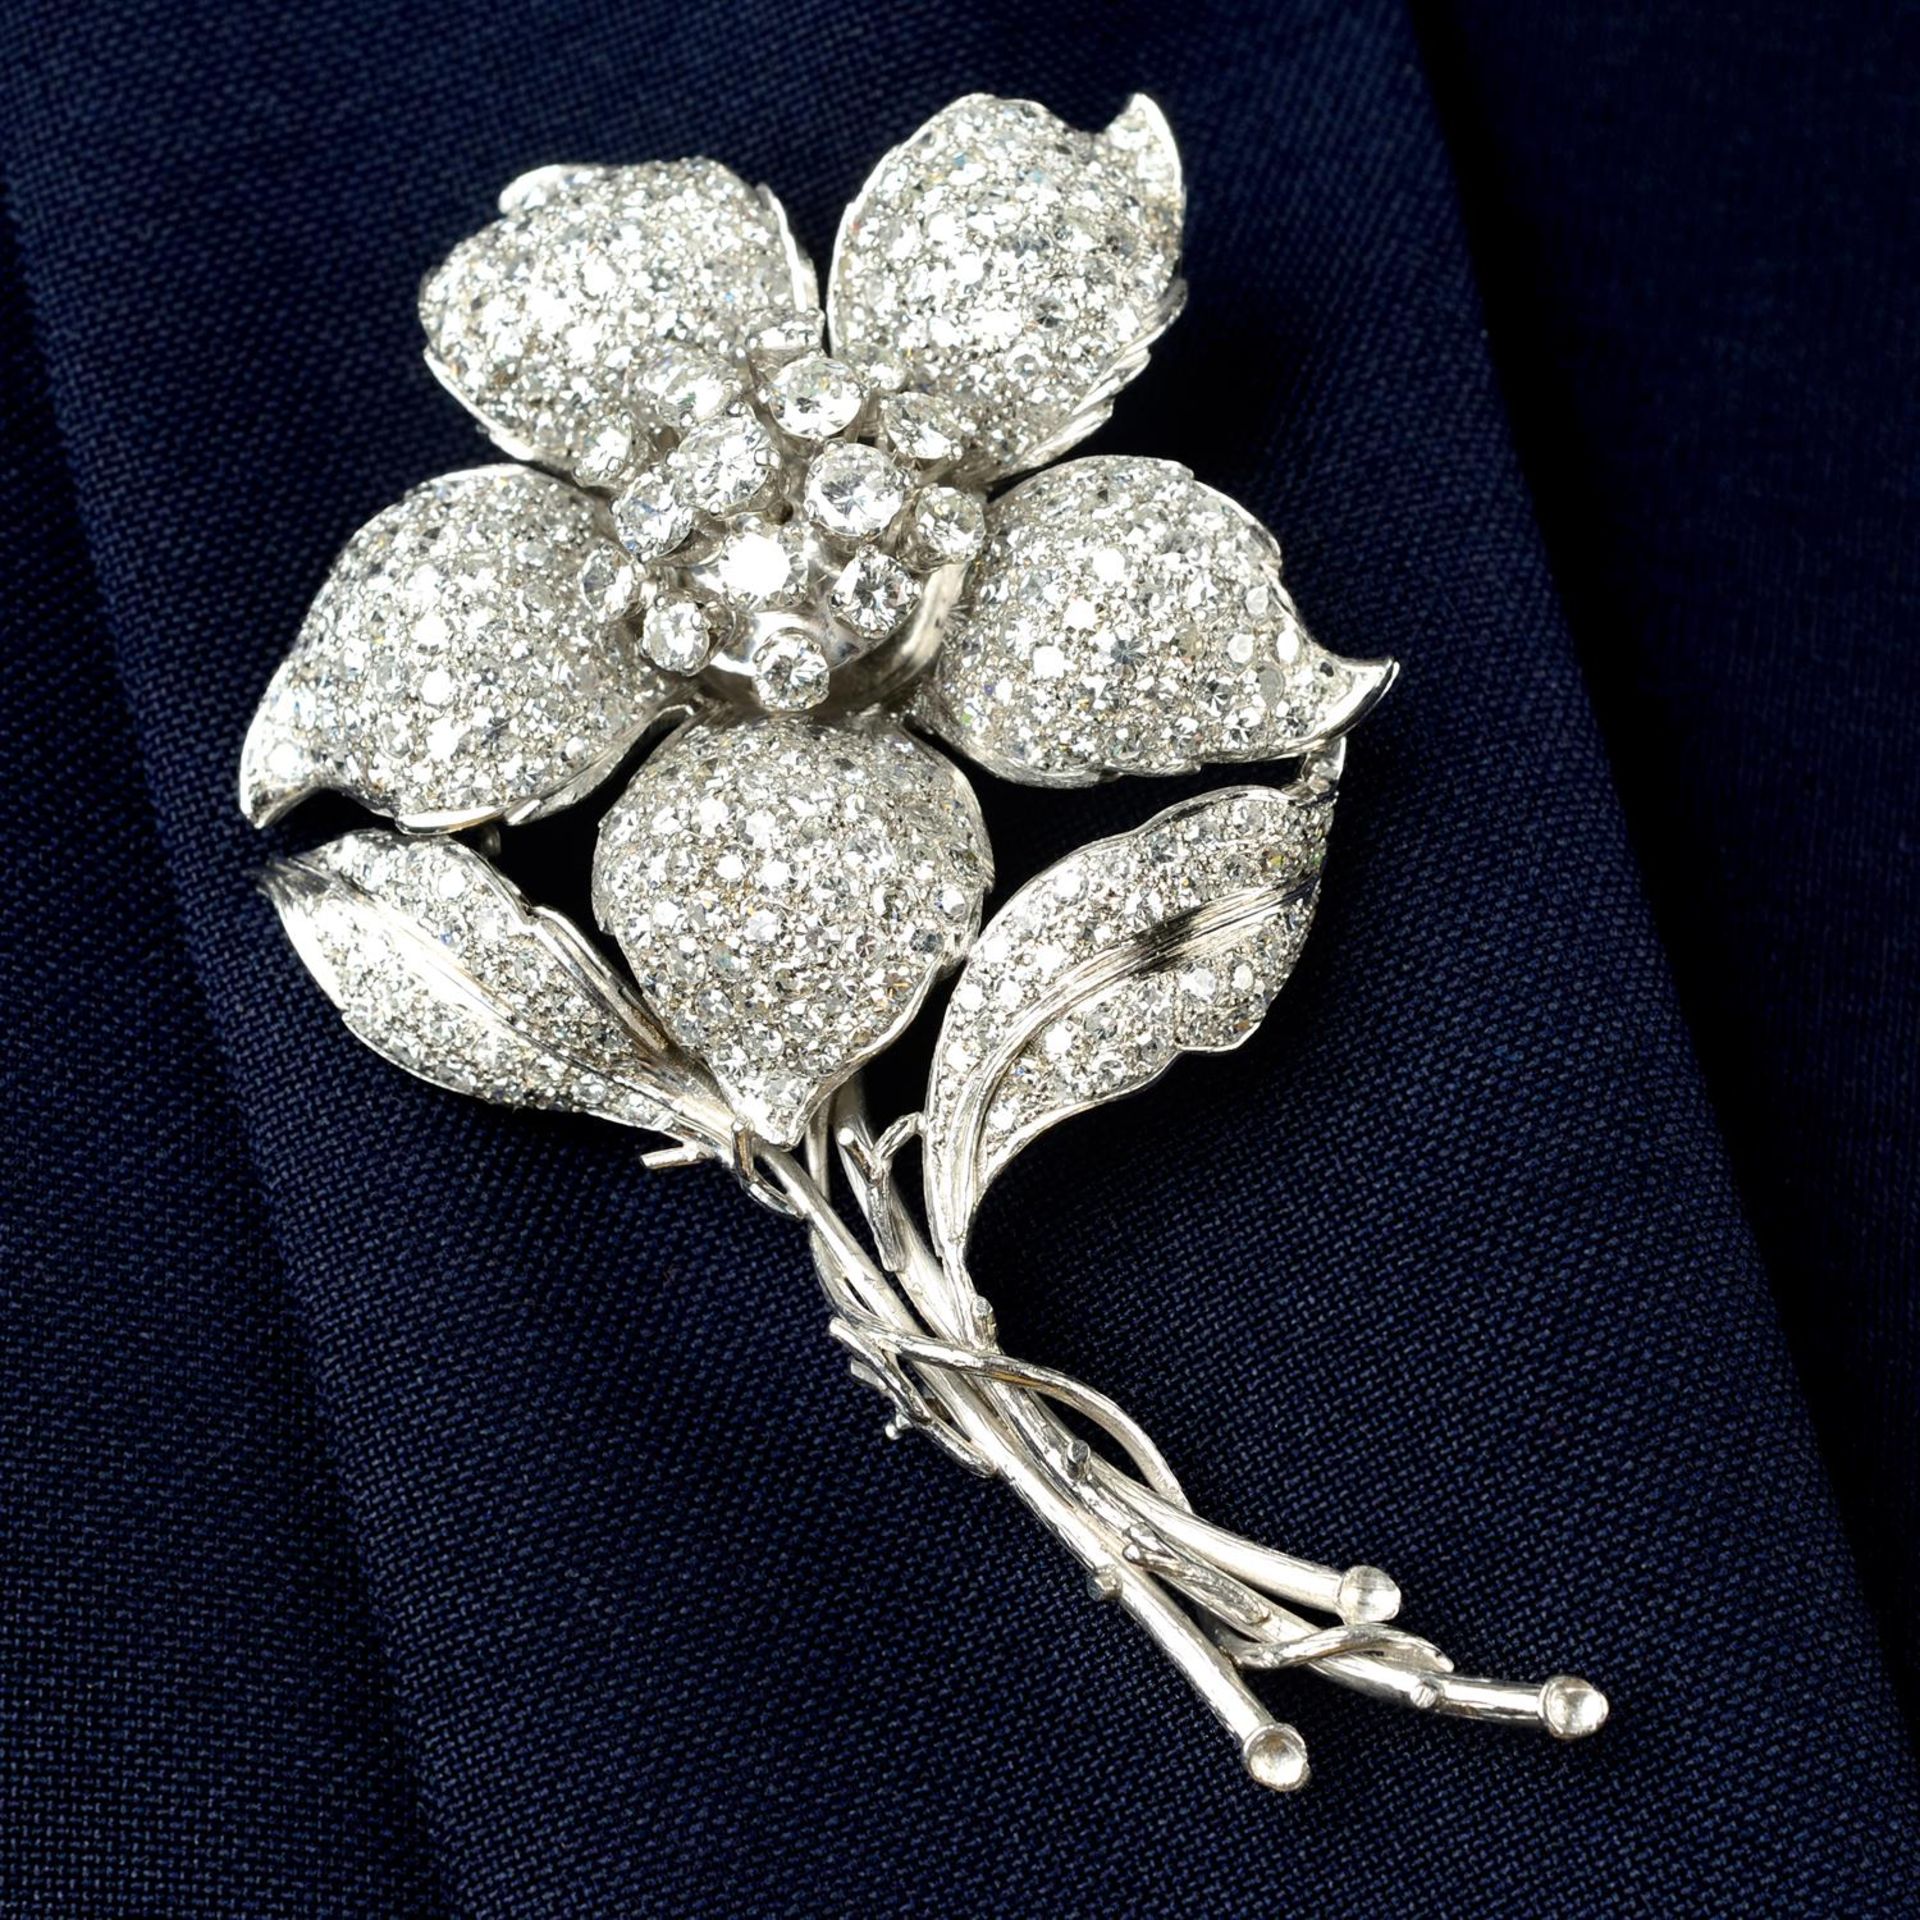 A pavé-set diamond flower brooch.